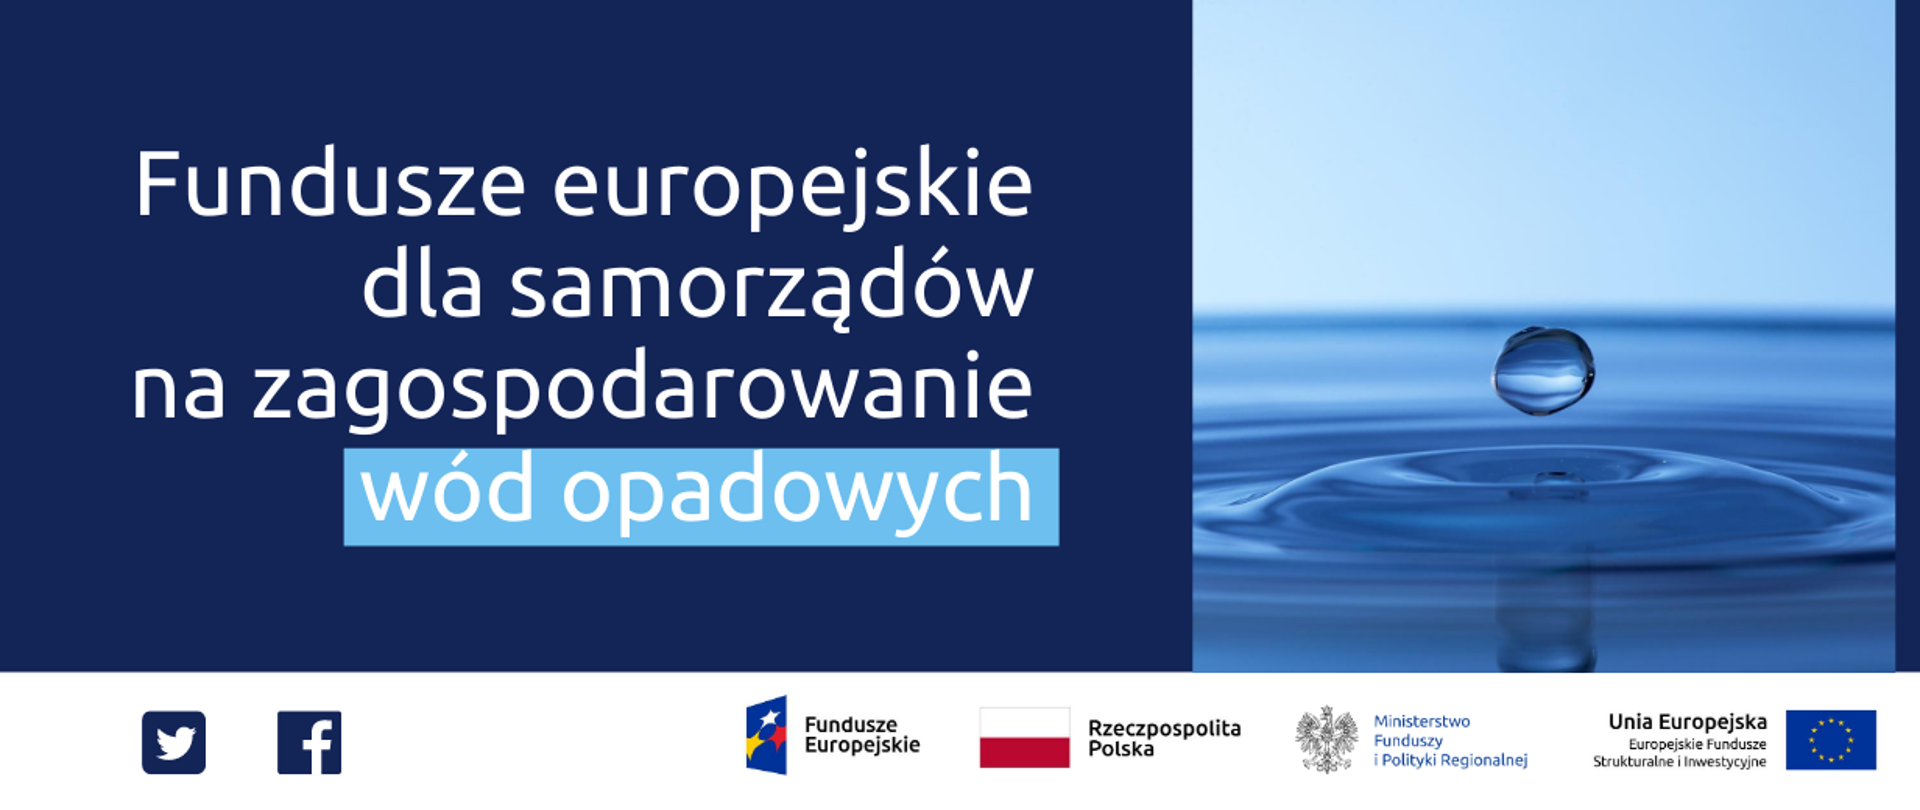 Grafika z tekstem: Fundusze europejskie dla samorządów na zagospodarowanie wód opadowych.